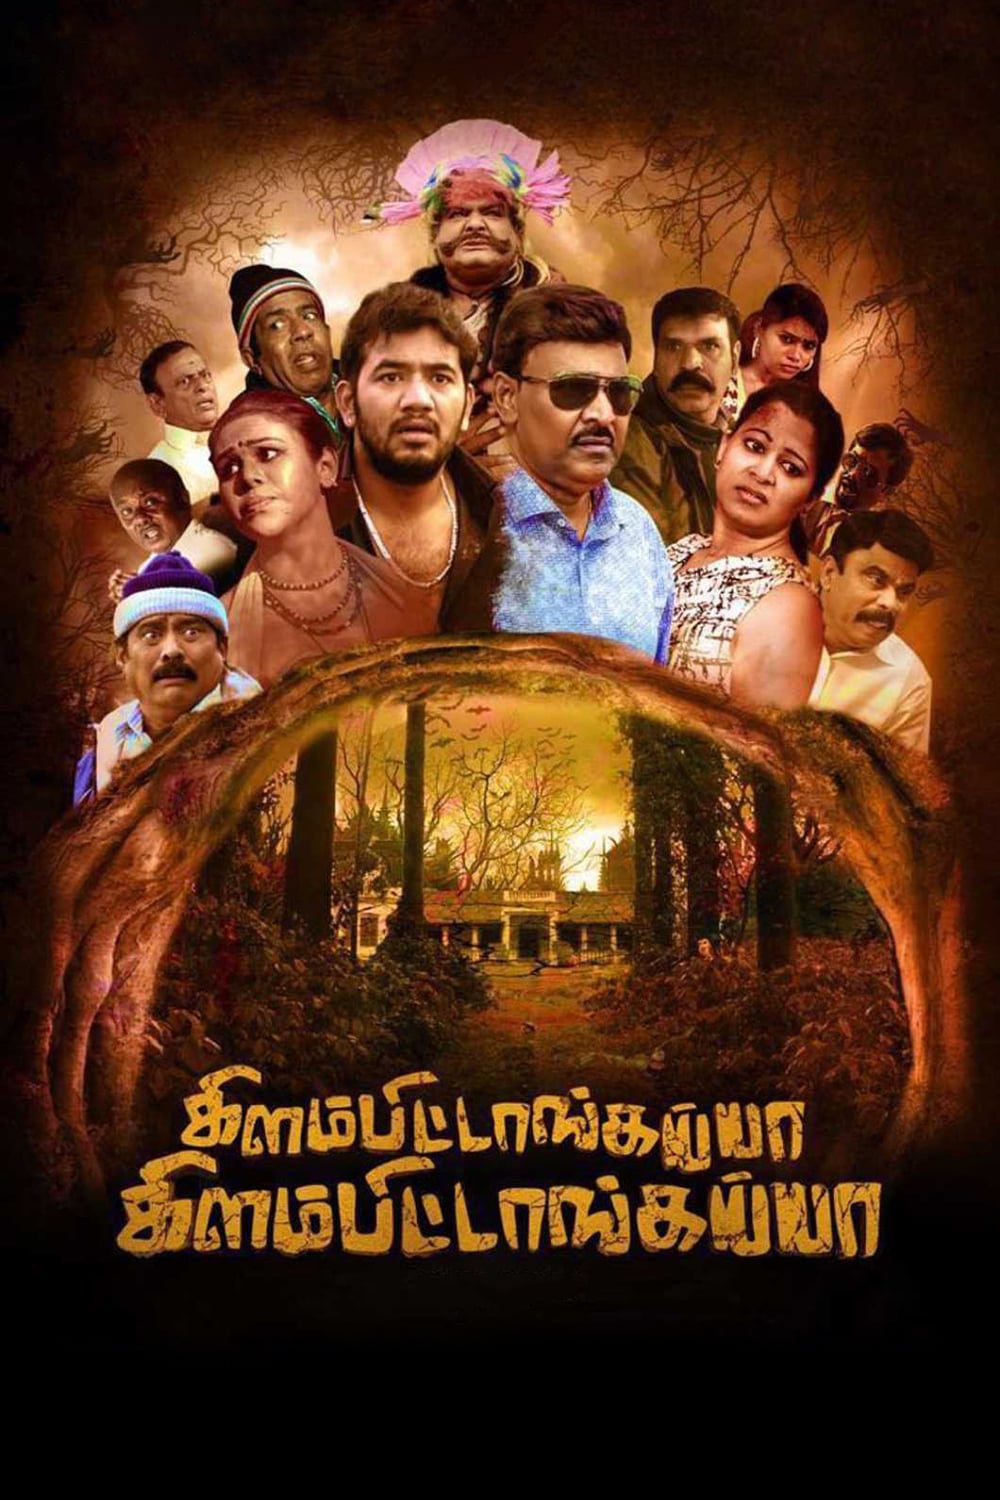 Poster for the movie "Kilambitaangayaa Kilambitaangayaa"